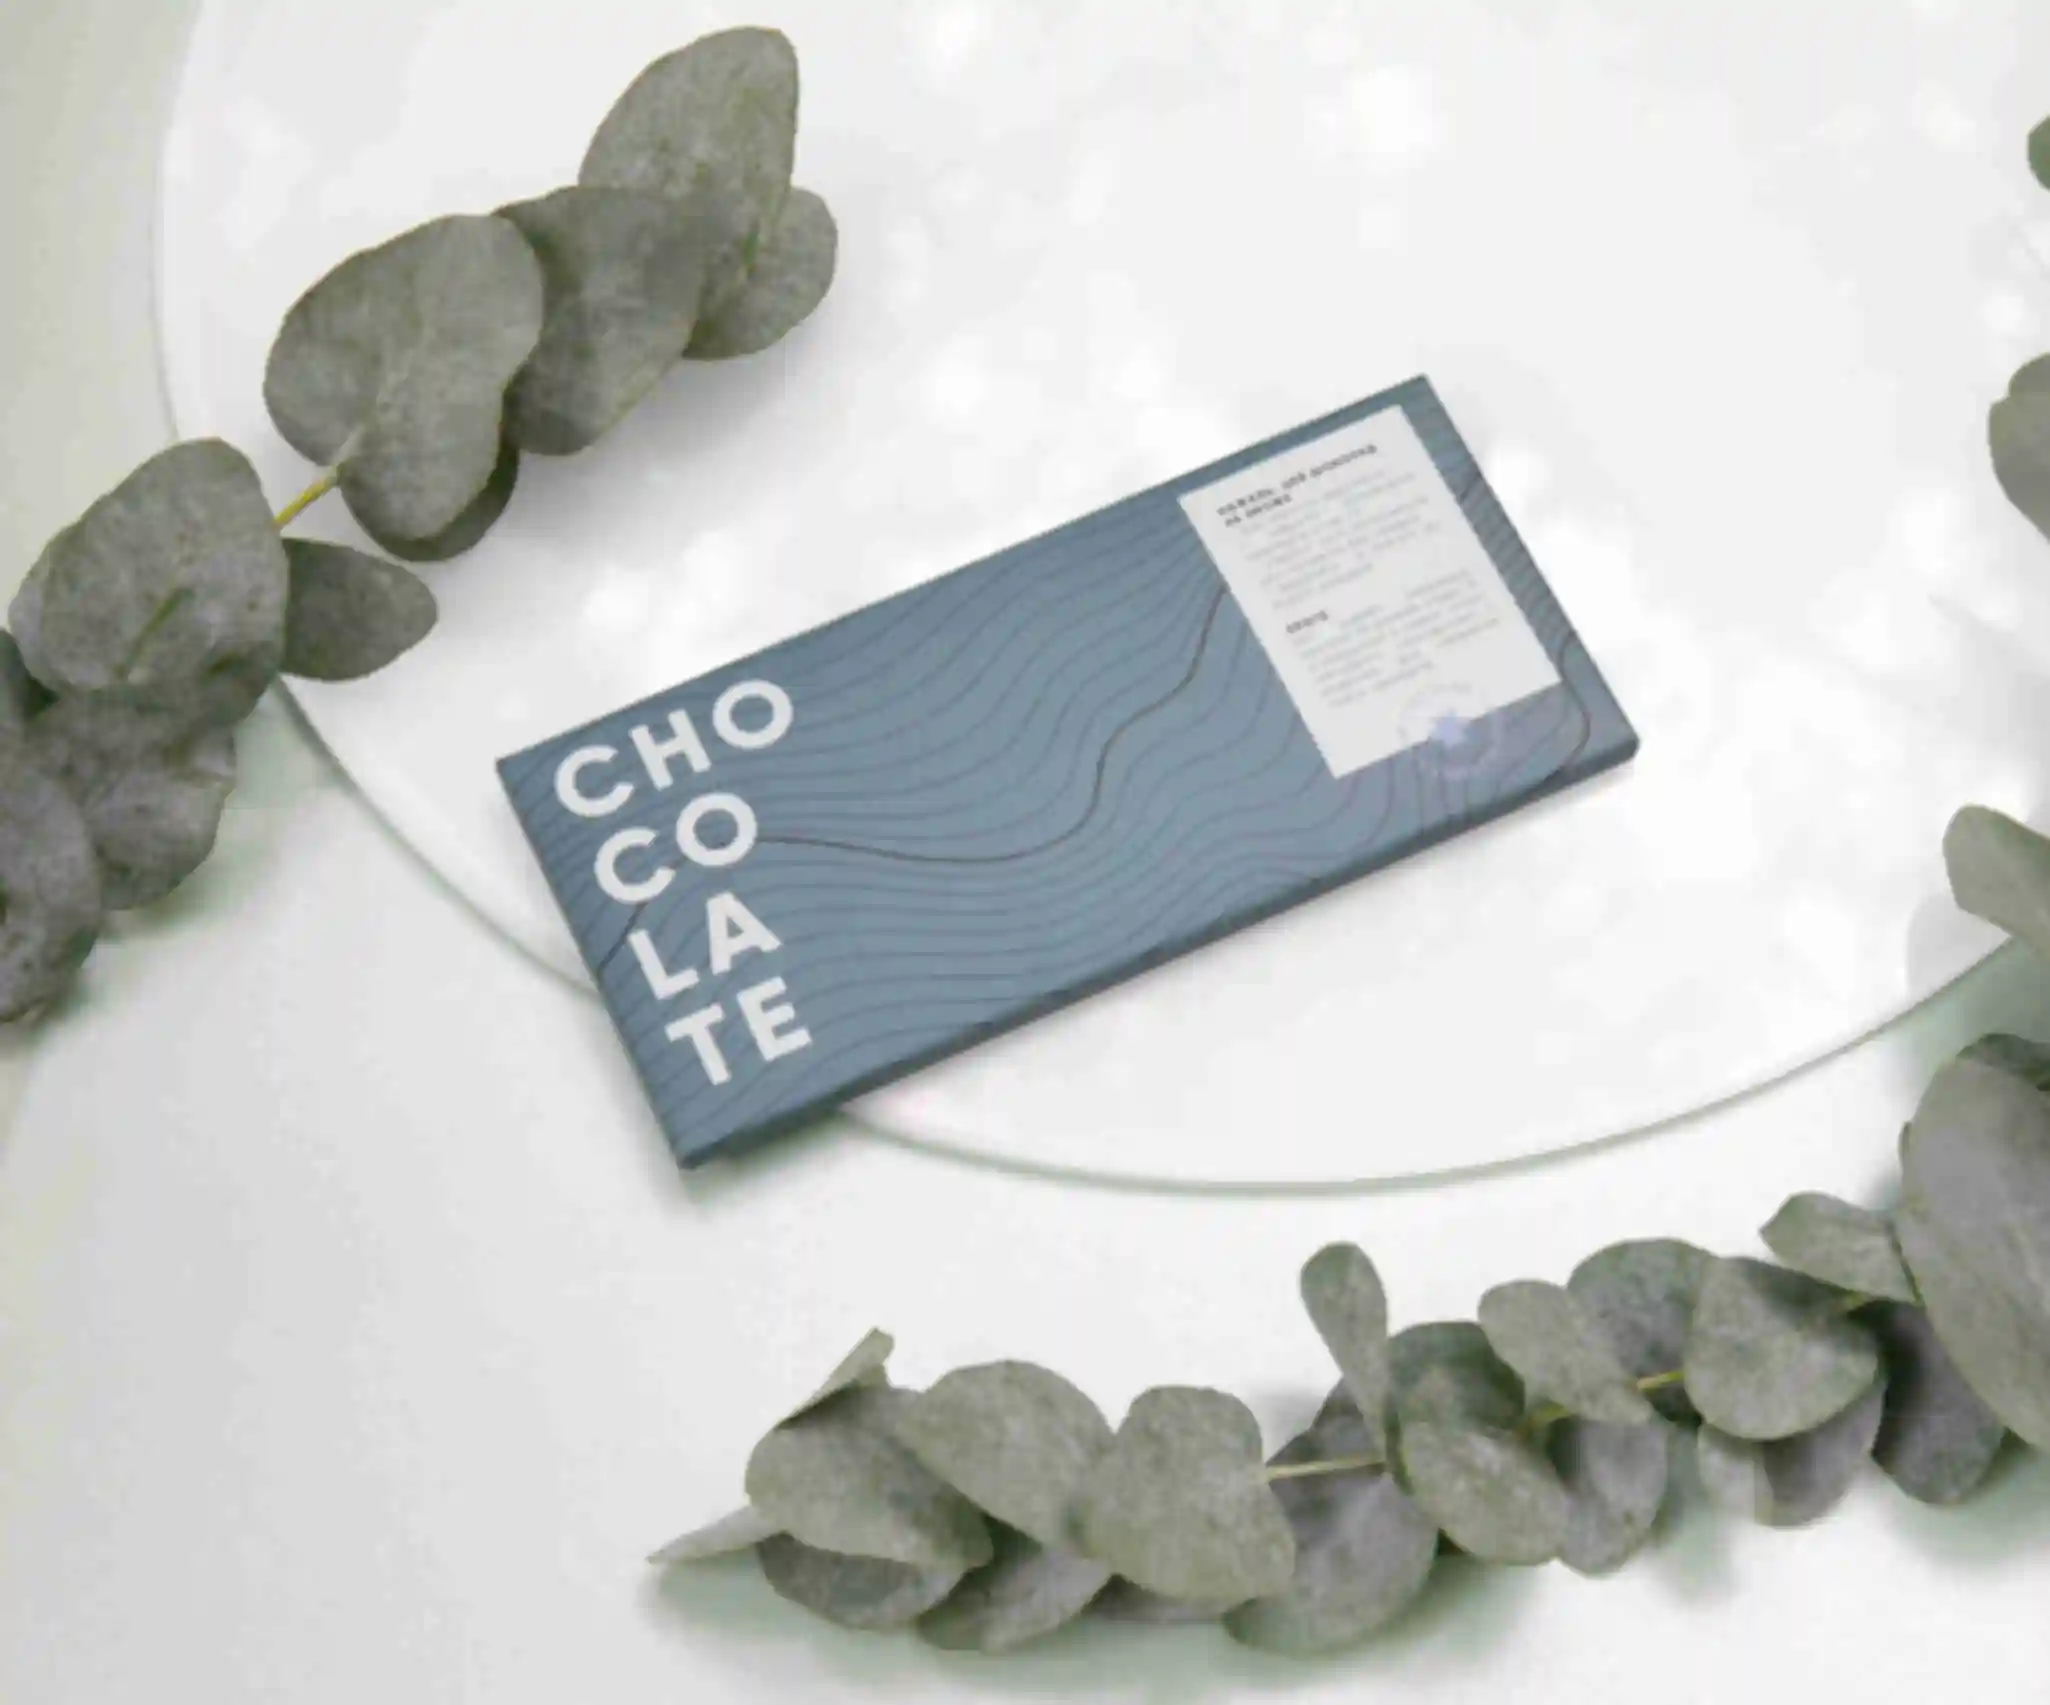 Черный шоколад с солёной карамелью • Подарок для дизайнера, художника, иллюстратора • Премиум-шоколад  для креативных сладкоежек. Фото №73